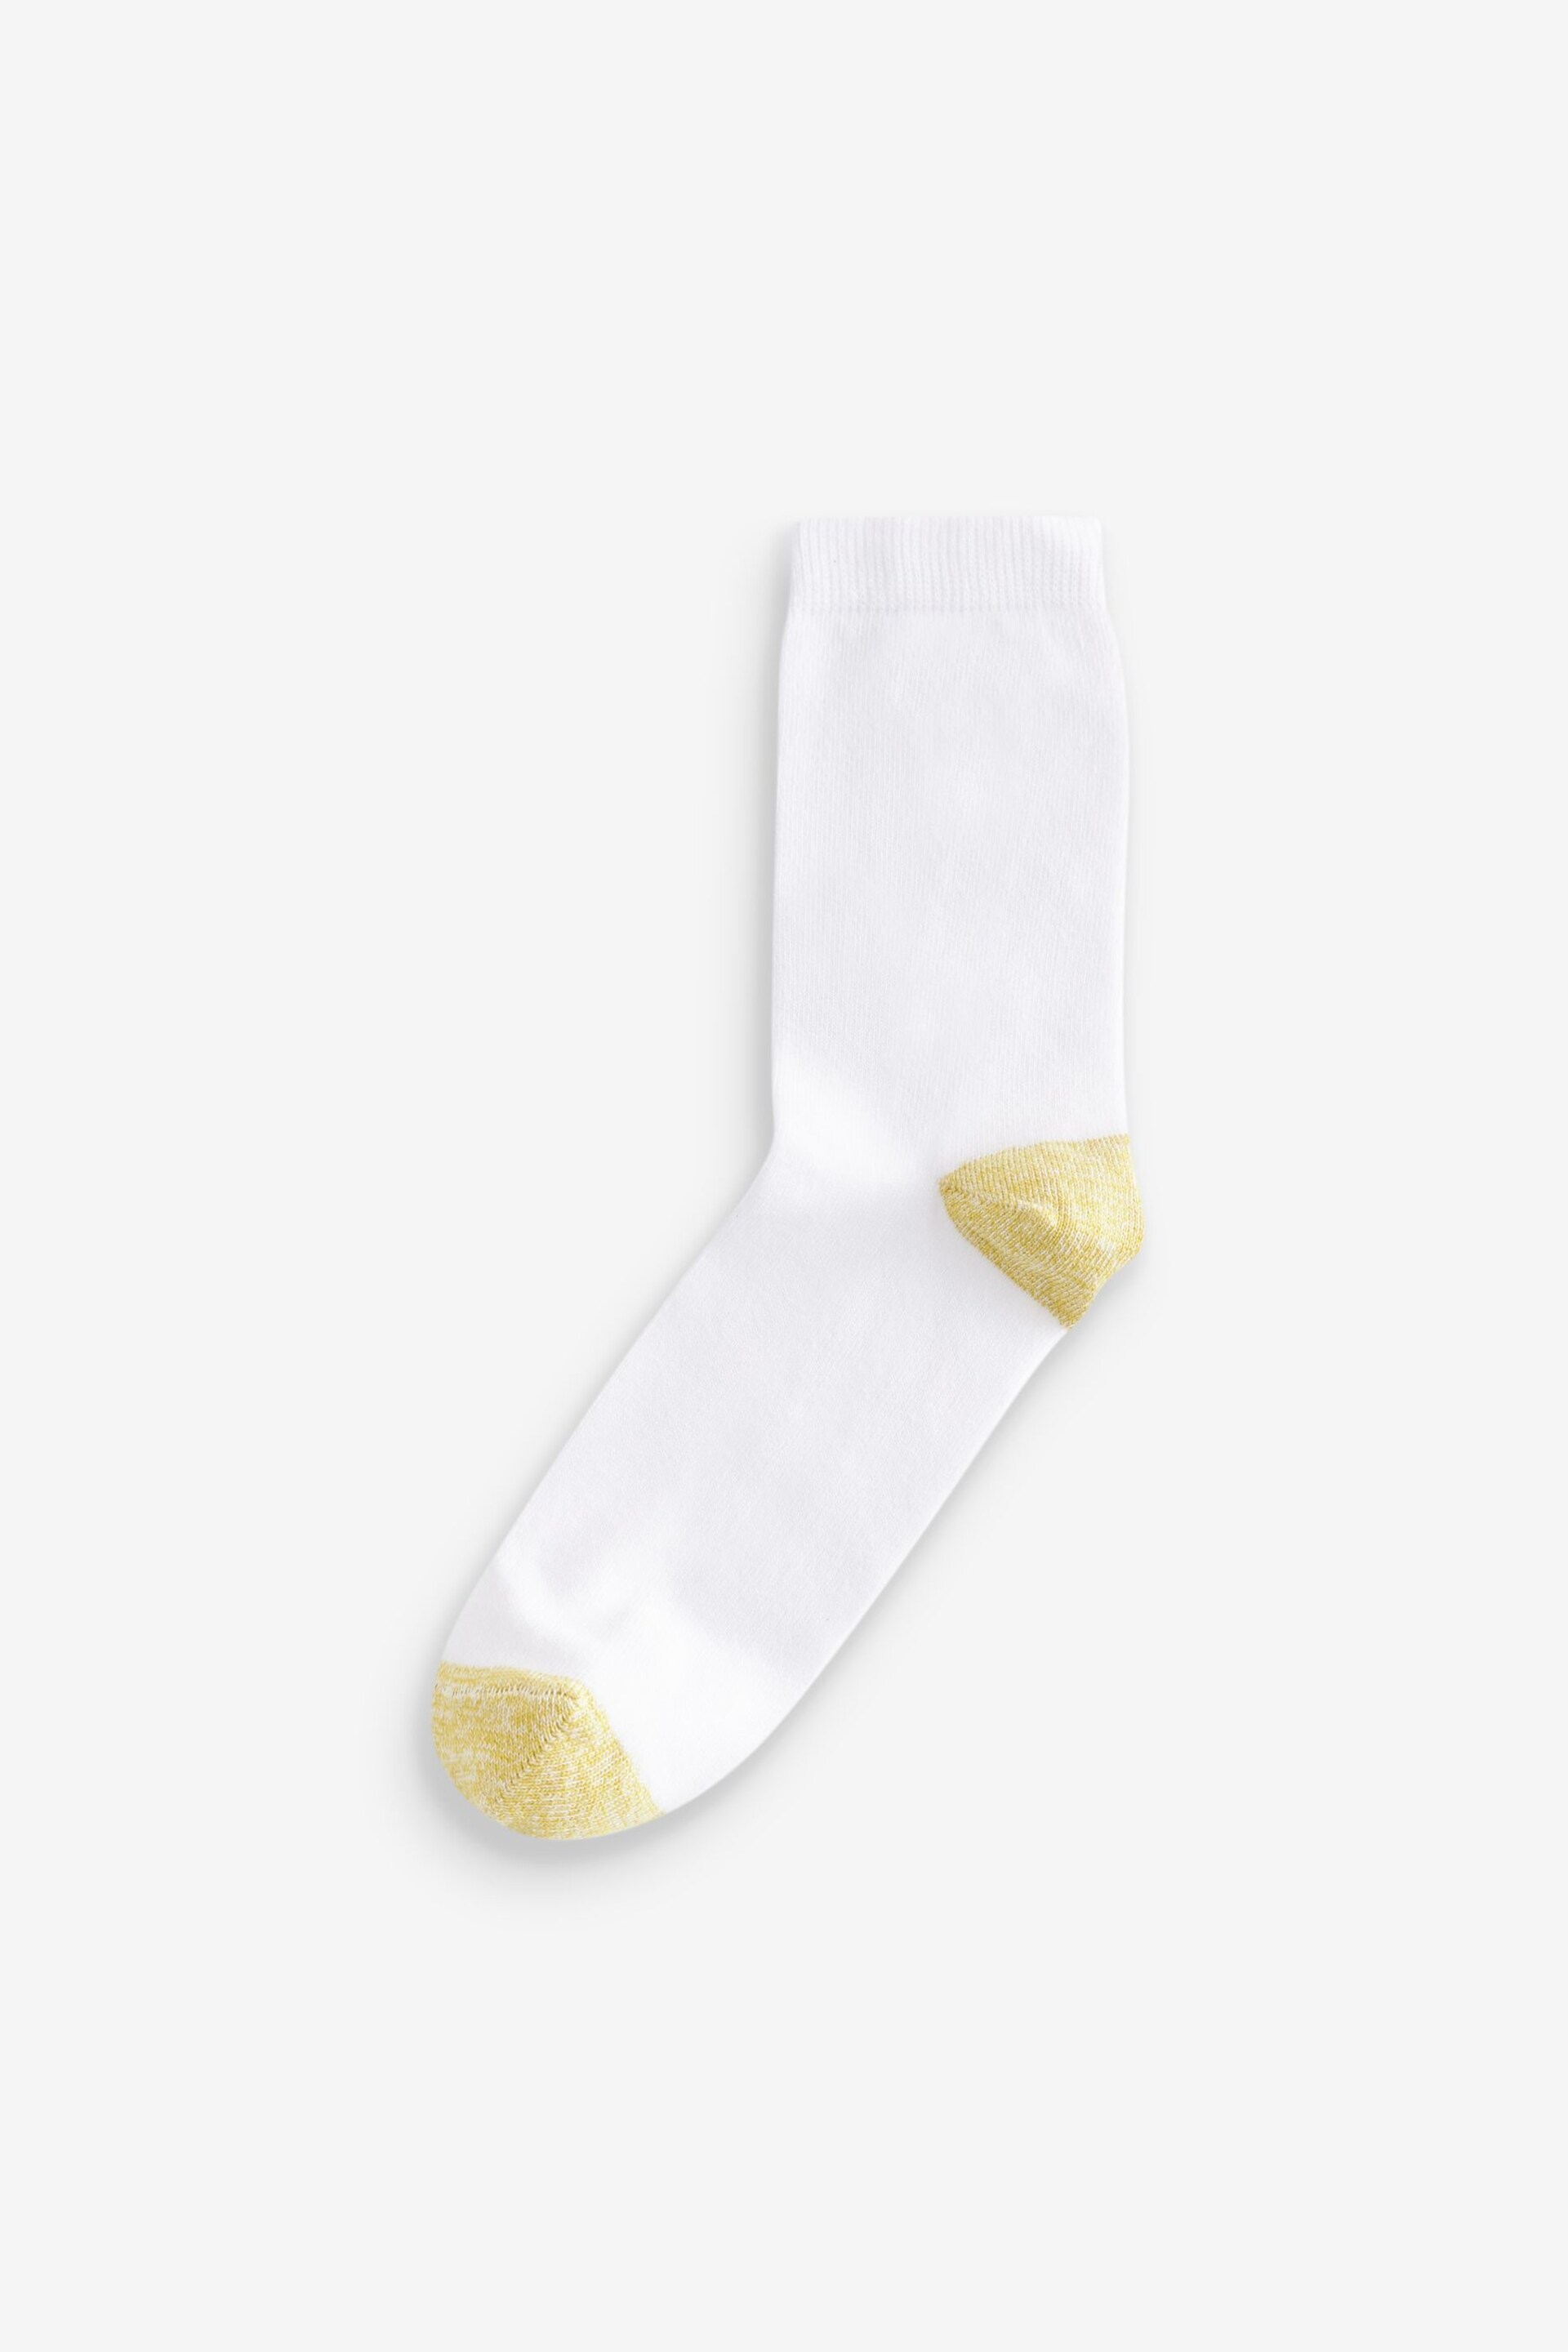 White Ankle Socks 4 Pack - Image 2 of 6